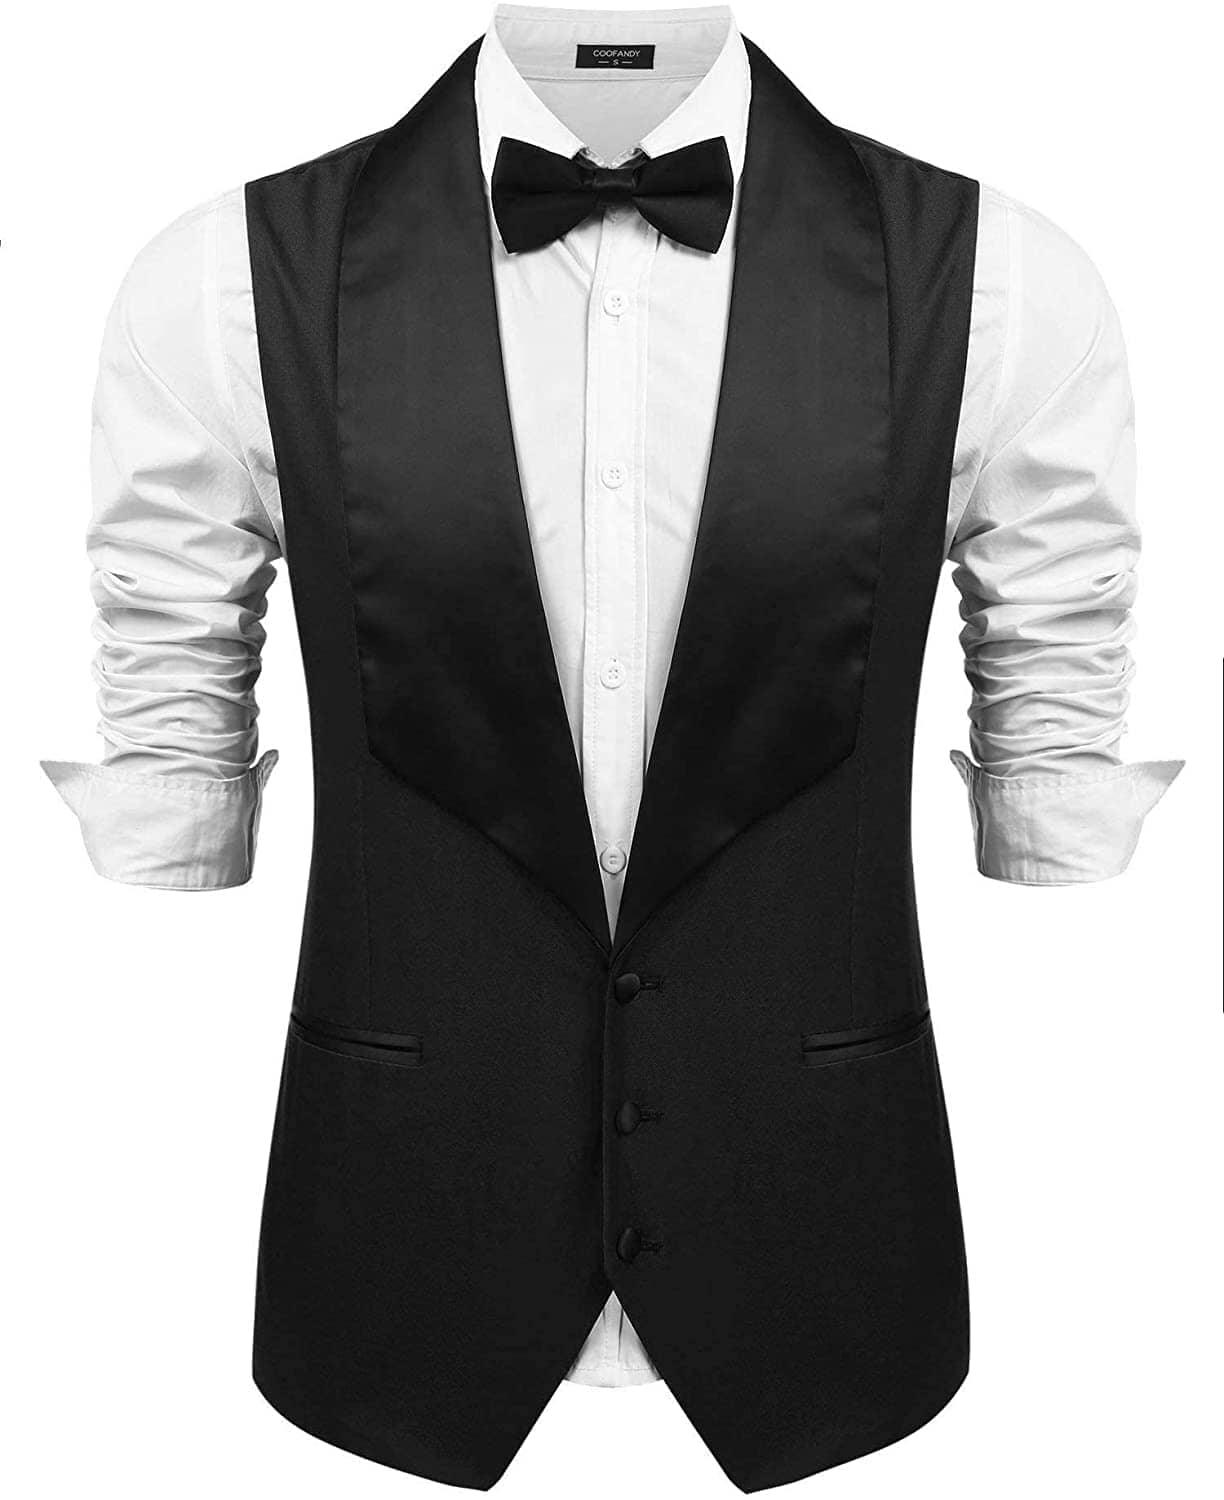 Coofandy V-Neck Slim Fit Suit Vests (US Only) Vest coofandy Black S 